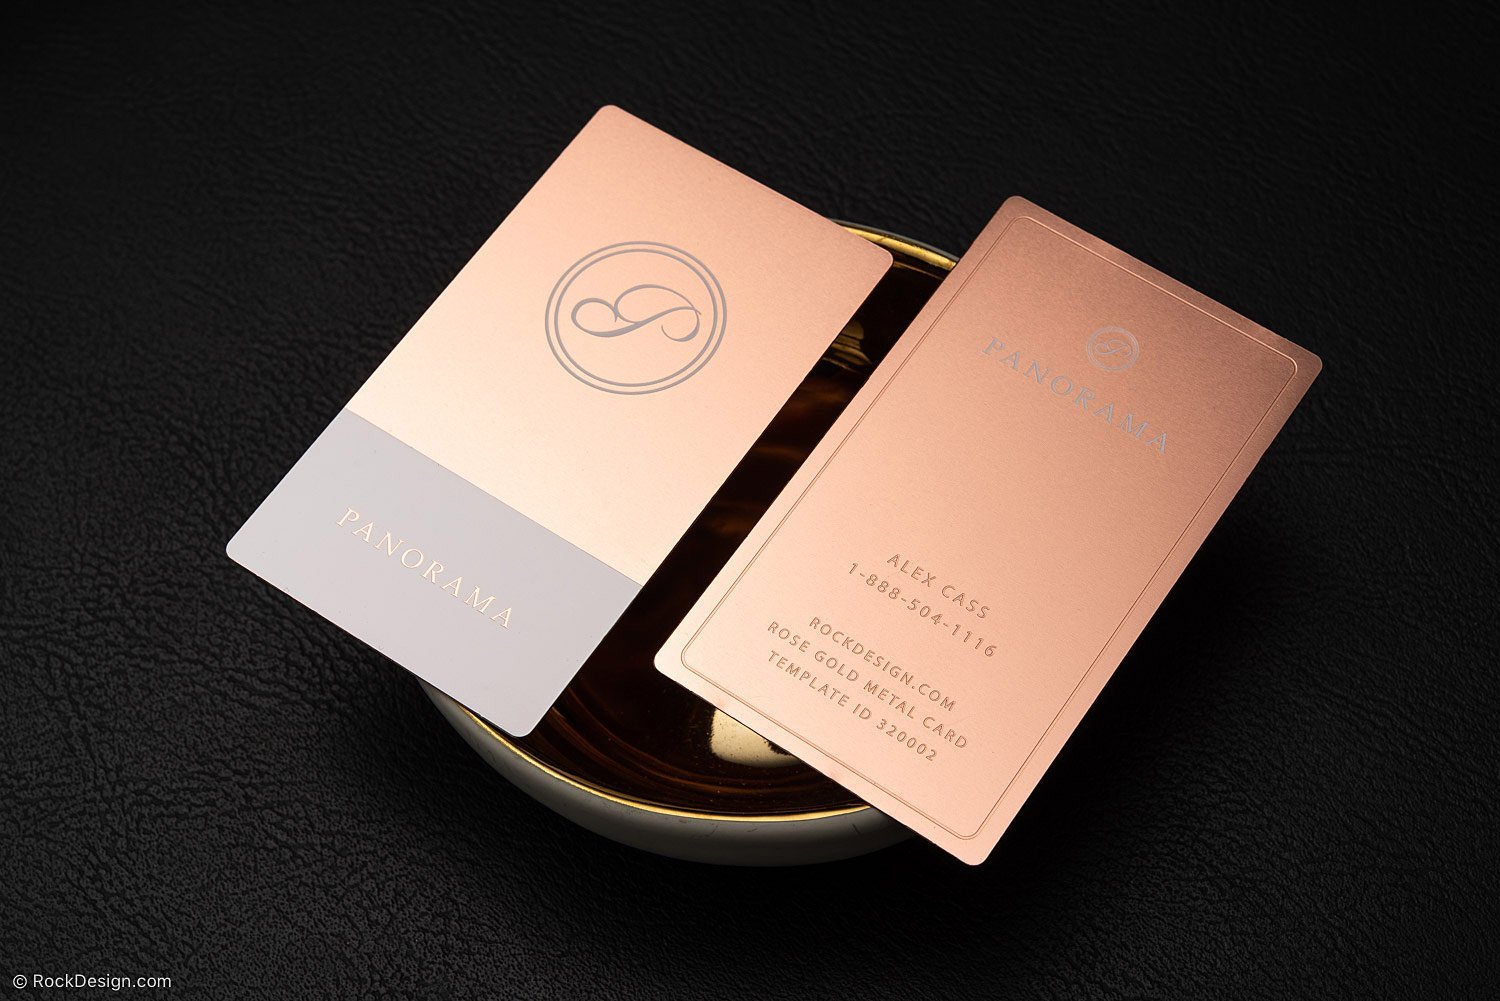 Rose Gold Luxury Perfume Logo Template Design Premium Premium